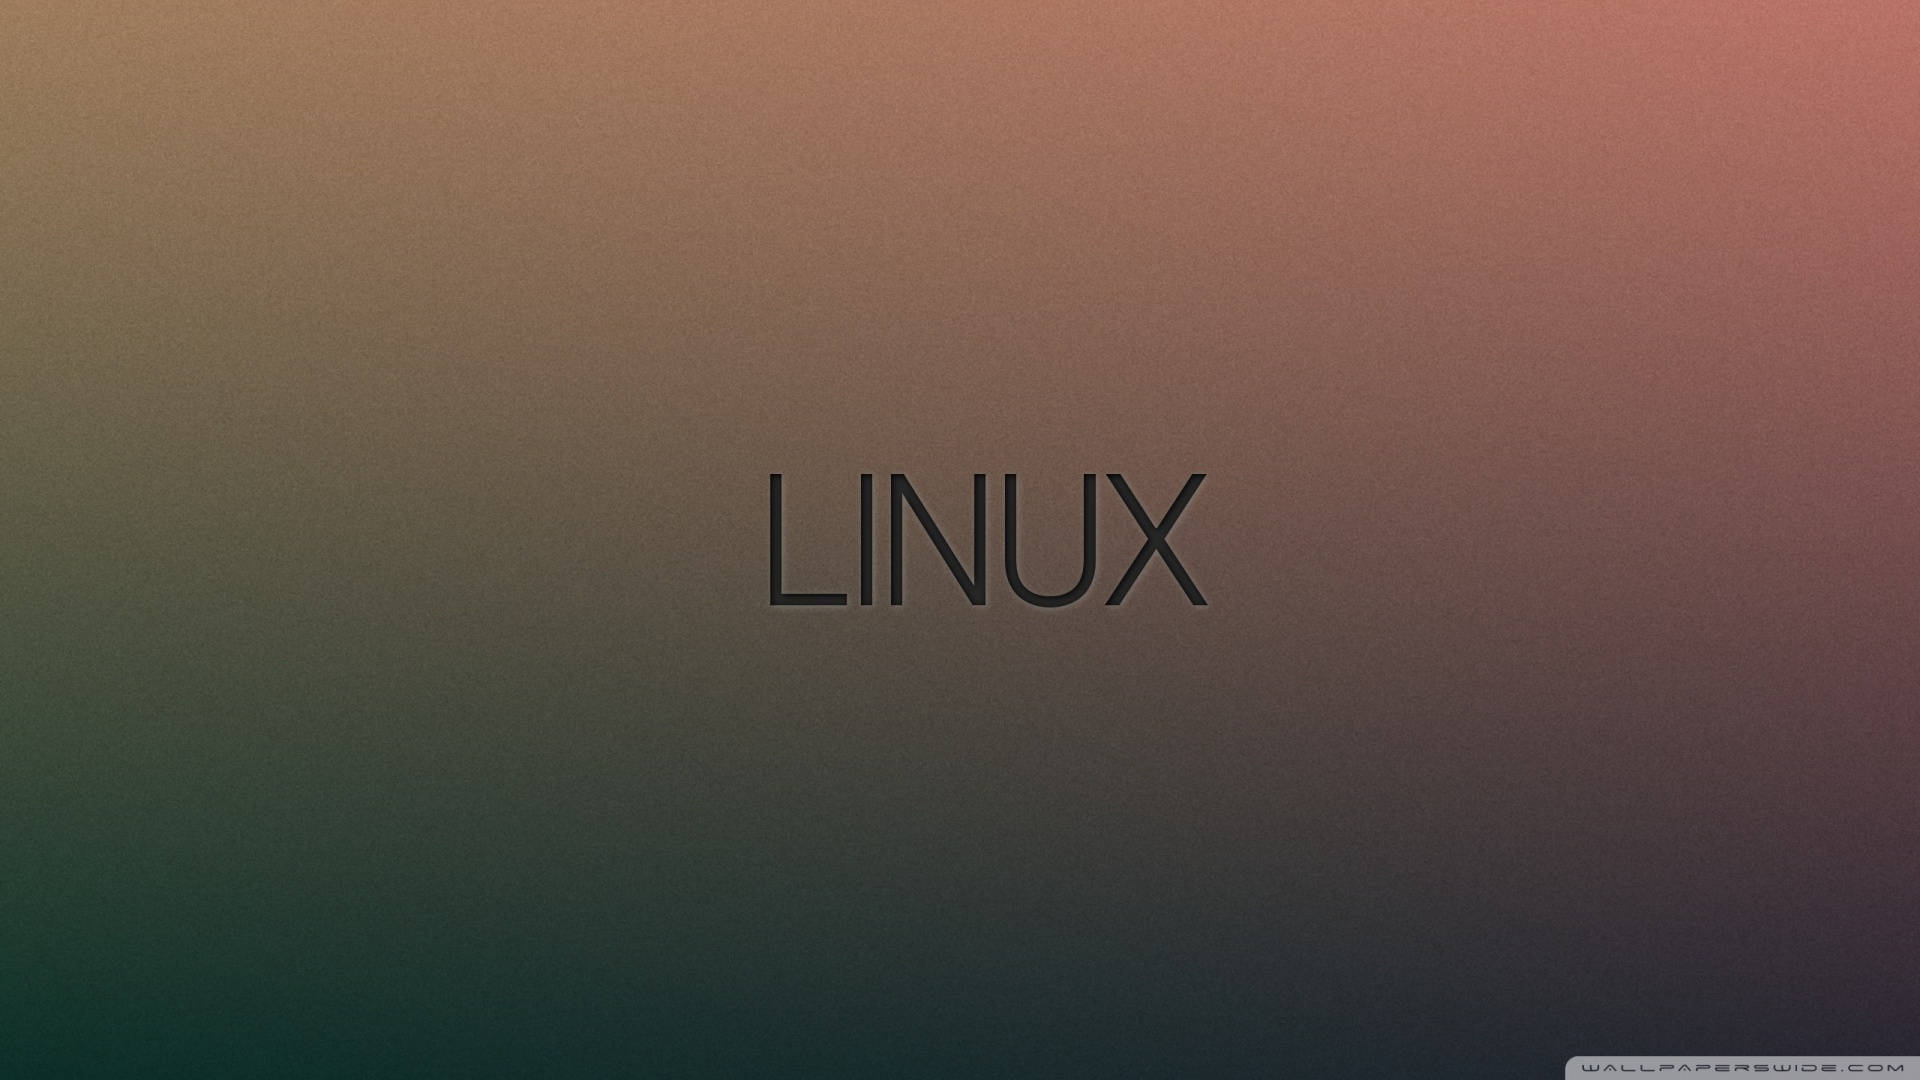 Minimalist Linux Gradient